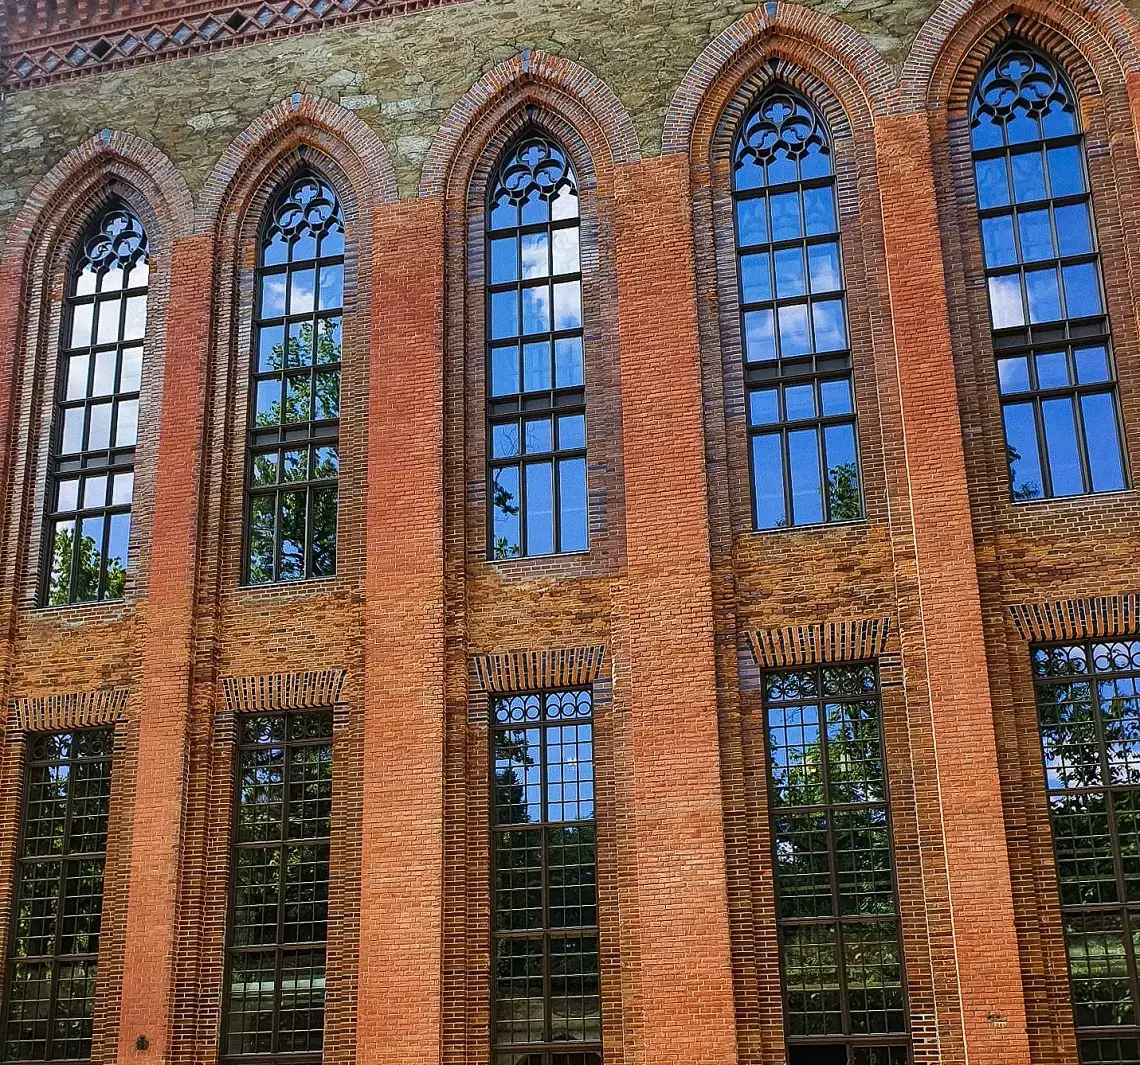 Giant windows in Kamieniec Zabkowicki